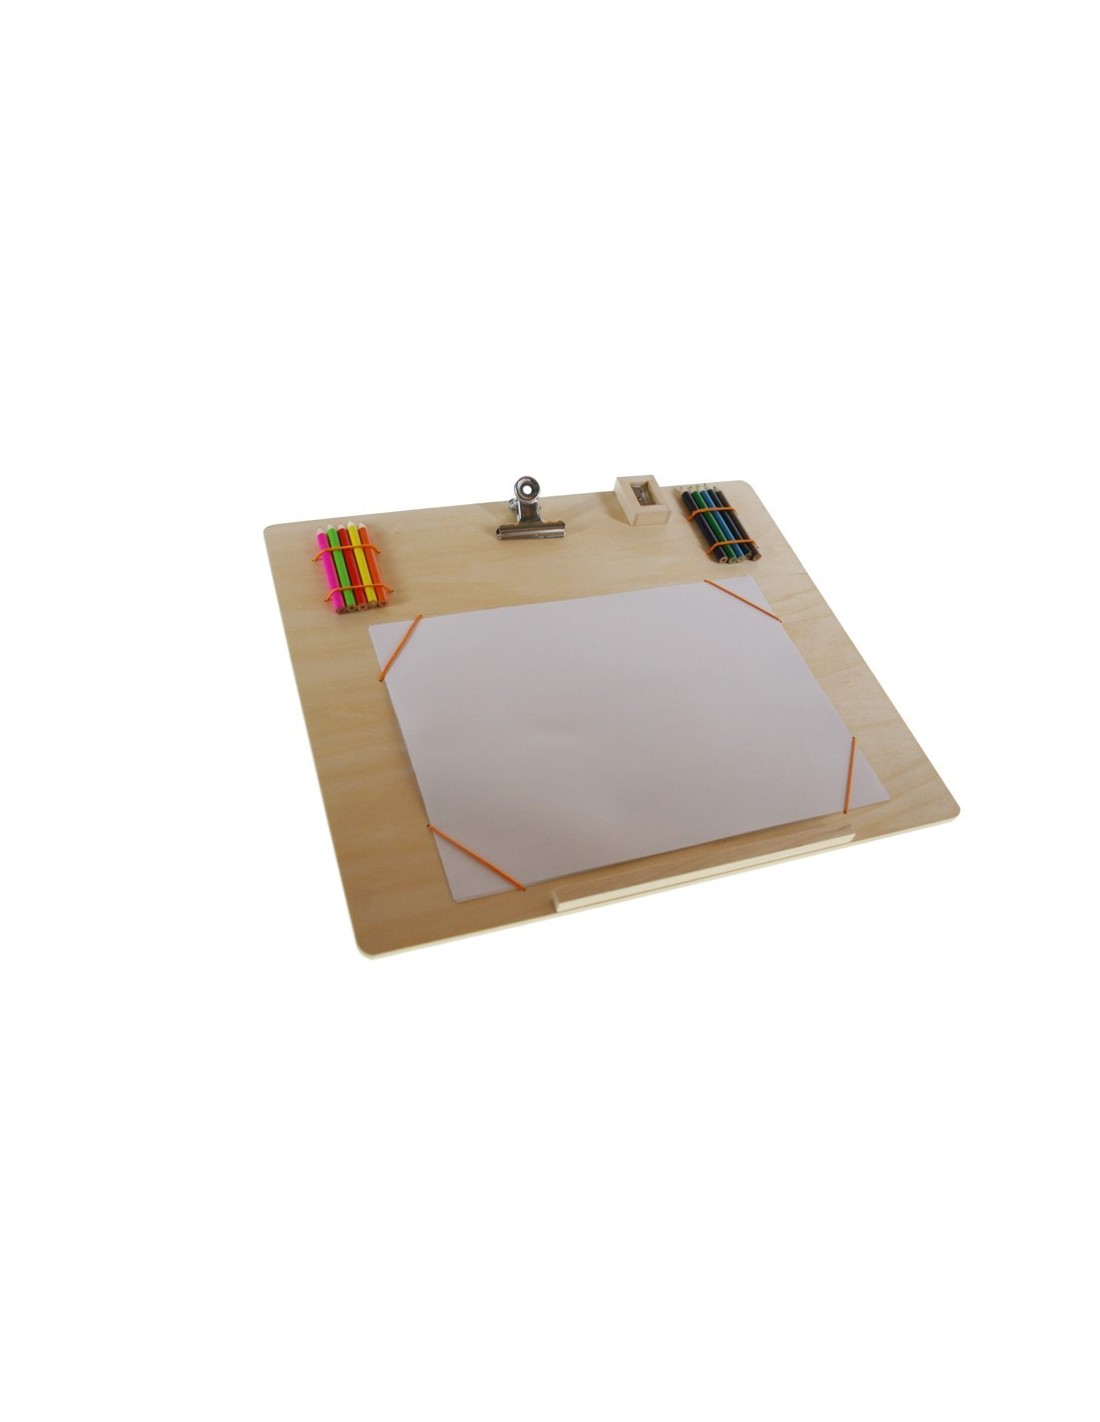 Tabla de madera con agarre papel para dibujar con accesorios